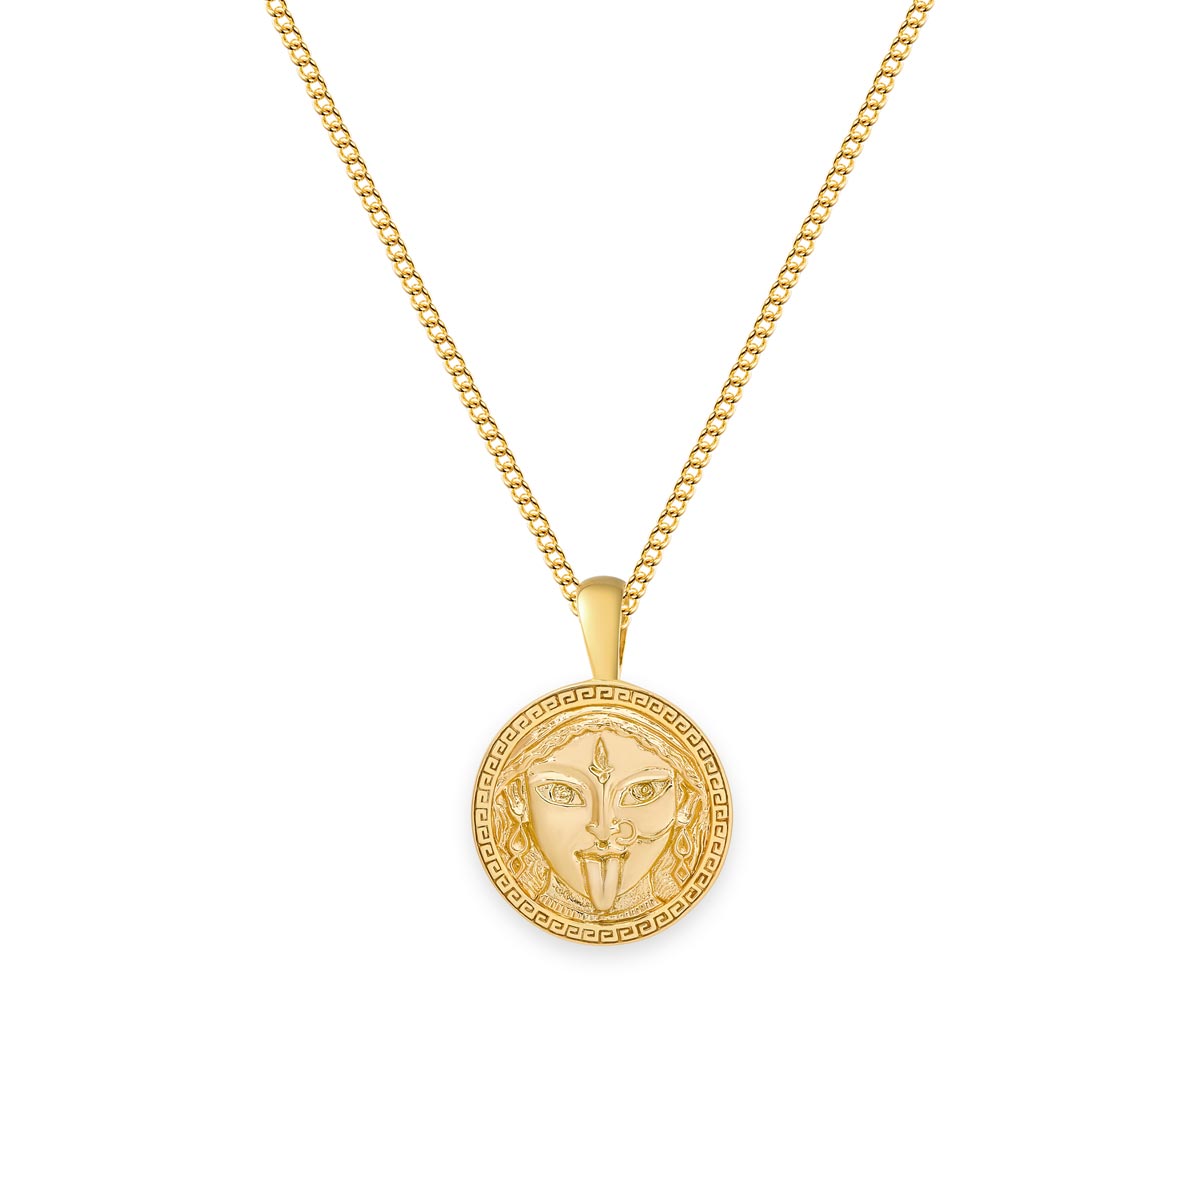 Kali gold pendant necklace